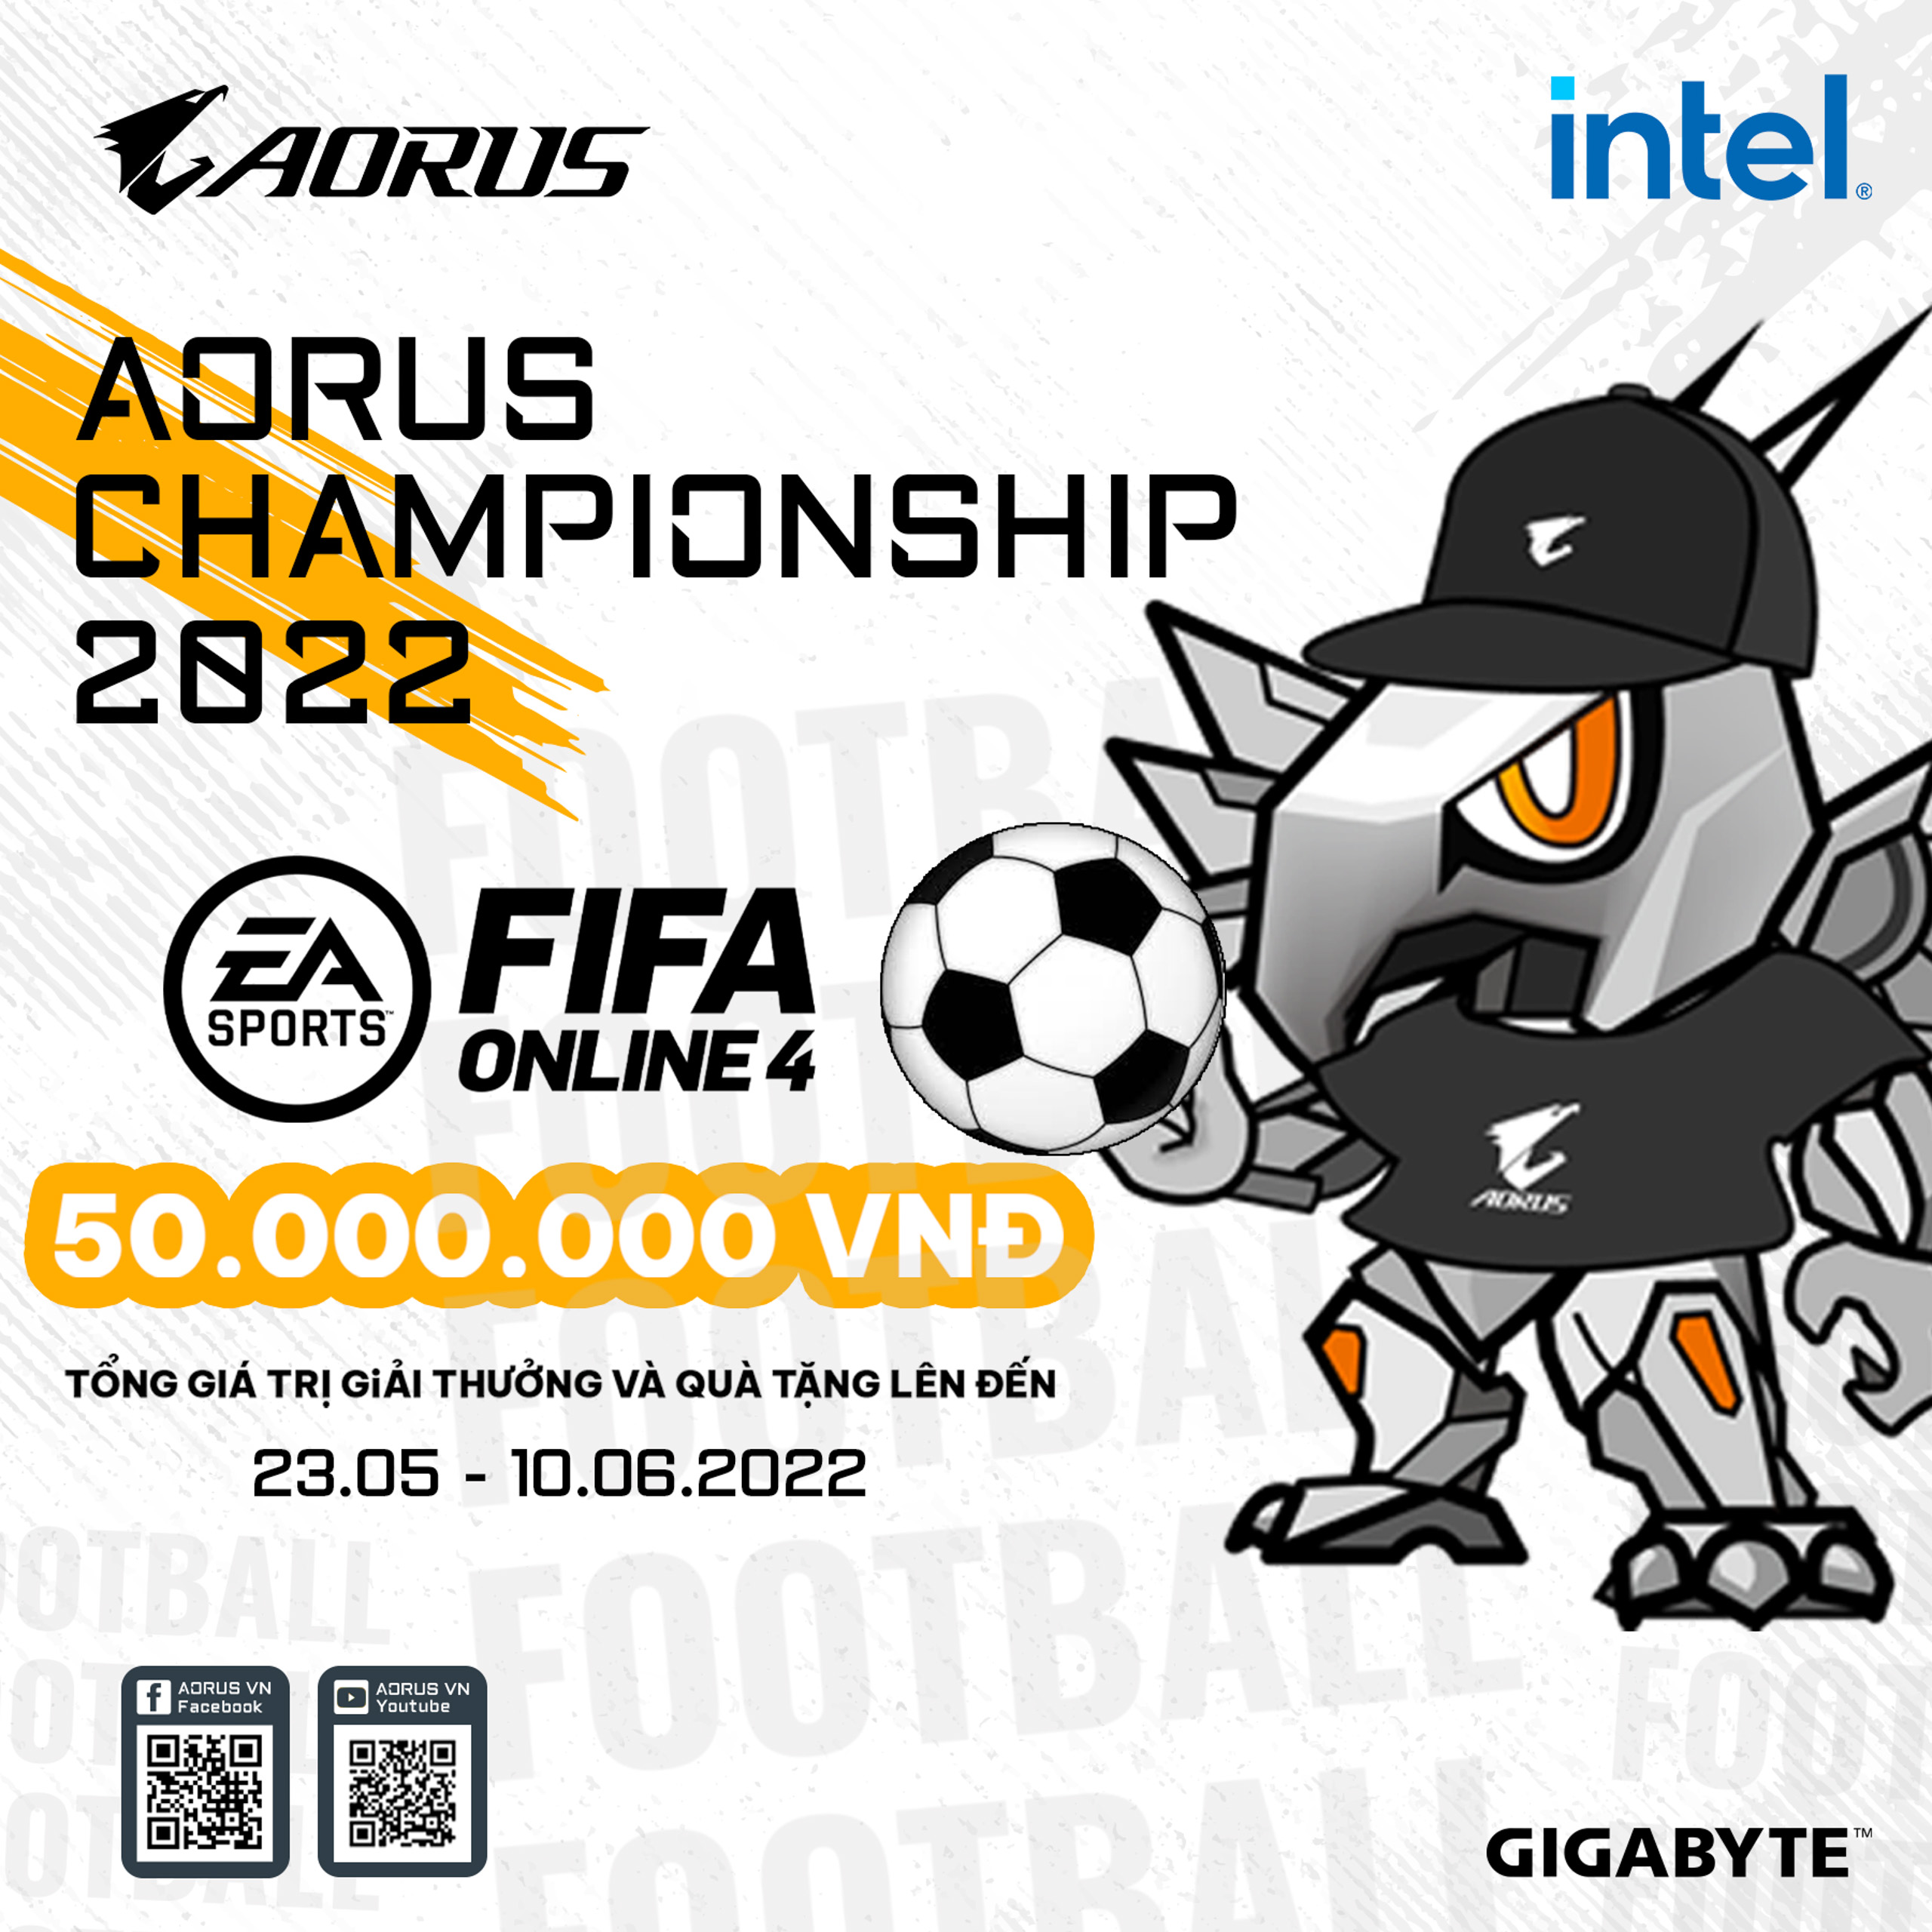 AORUS Championship 2022 FIFA Online 4 - Giải đấu siêu khủng cho Fan bóng đá